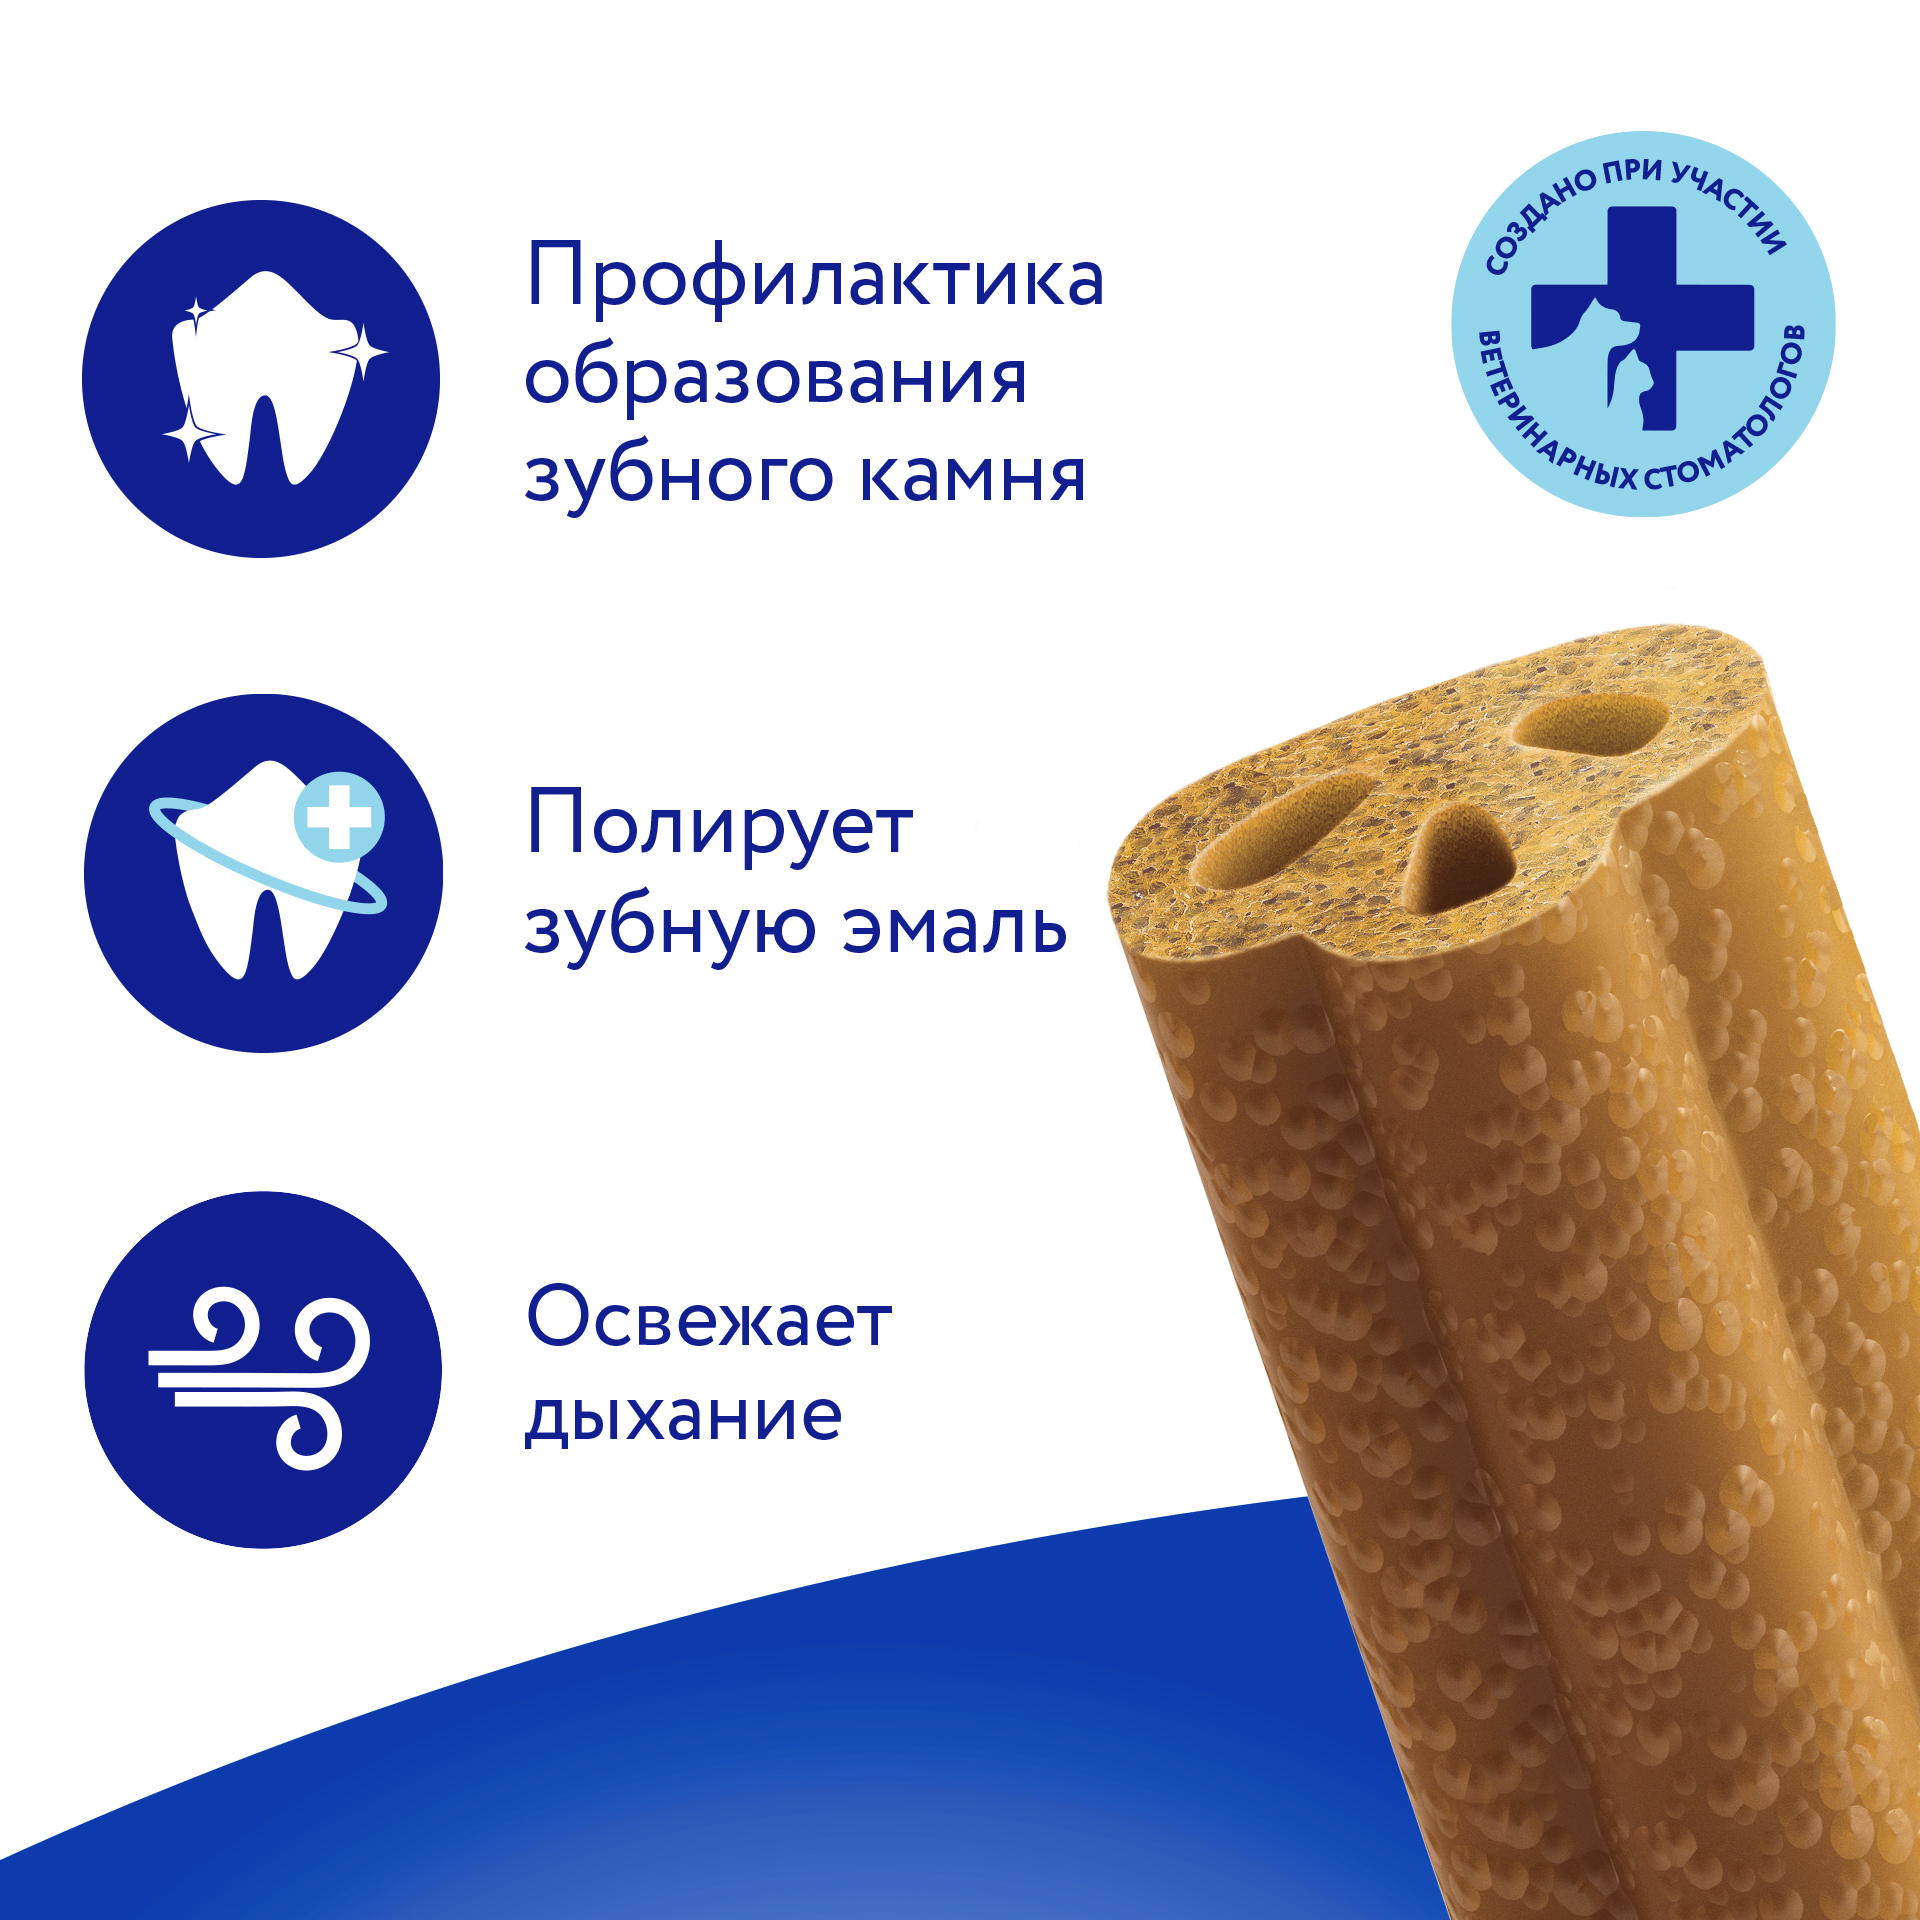 Лакомство Мнямс ДЕНТАЛ для собак "Зубные спонжи" с фитокомплексом 15г